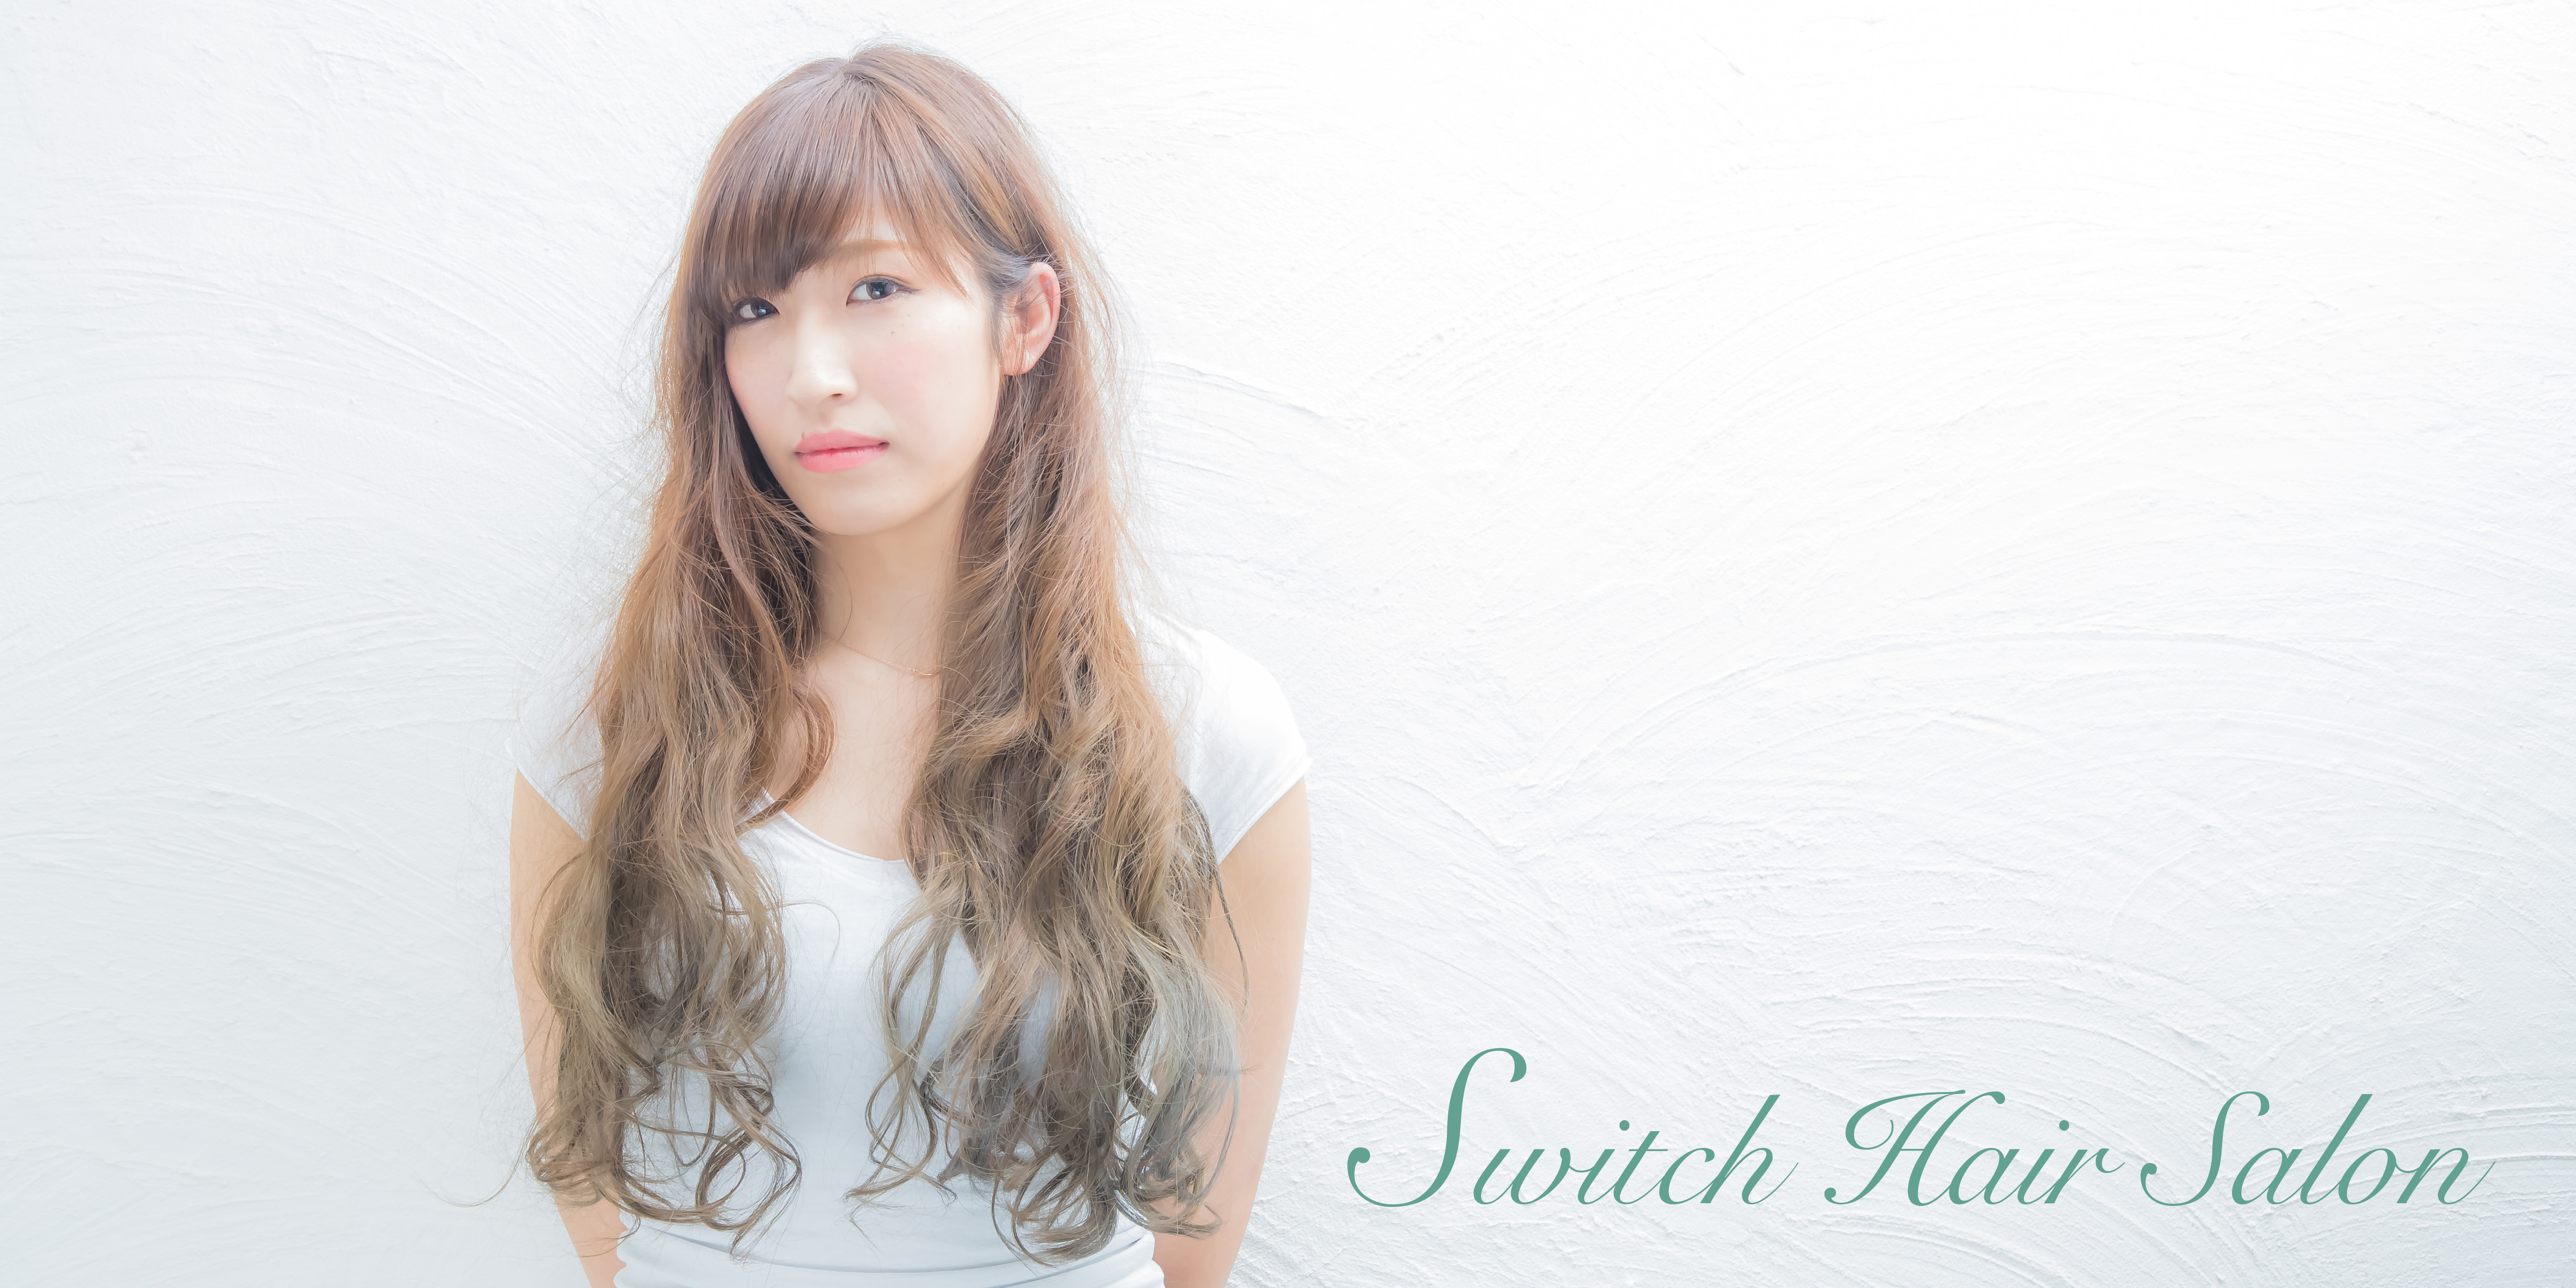 Switch Hair Salon 大阪市